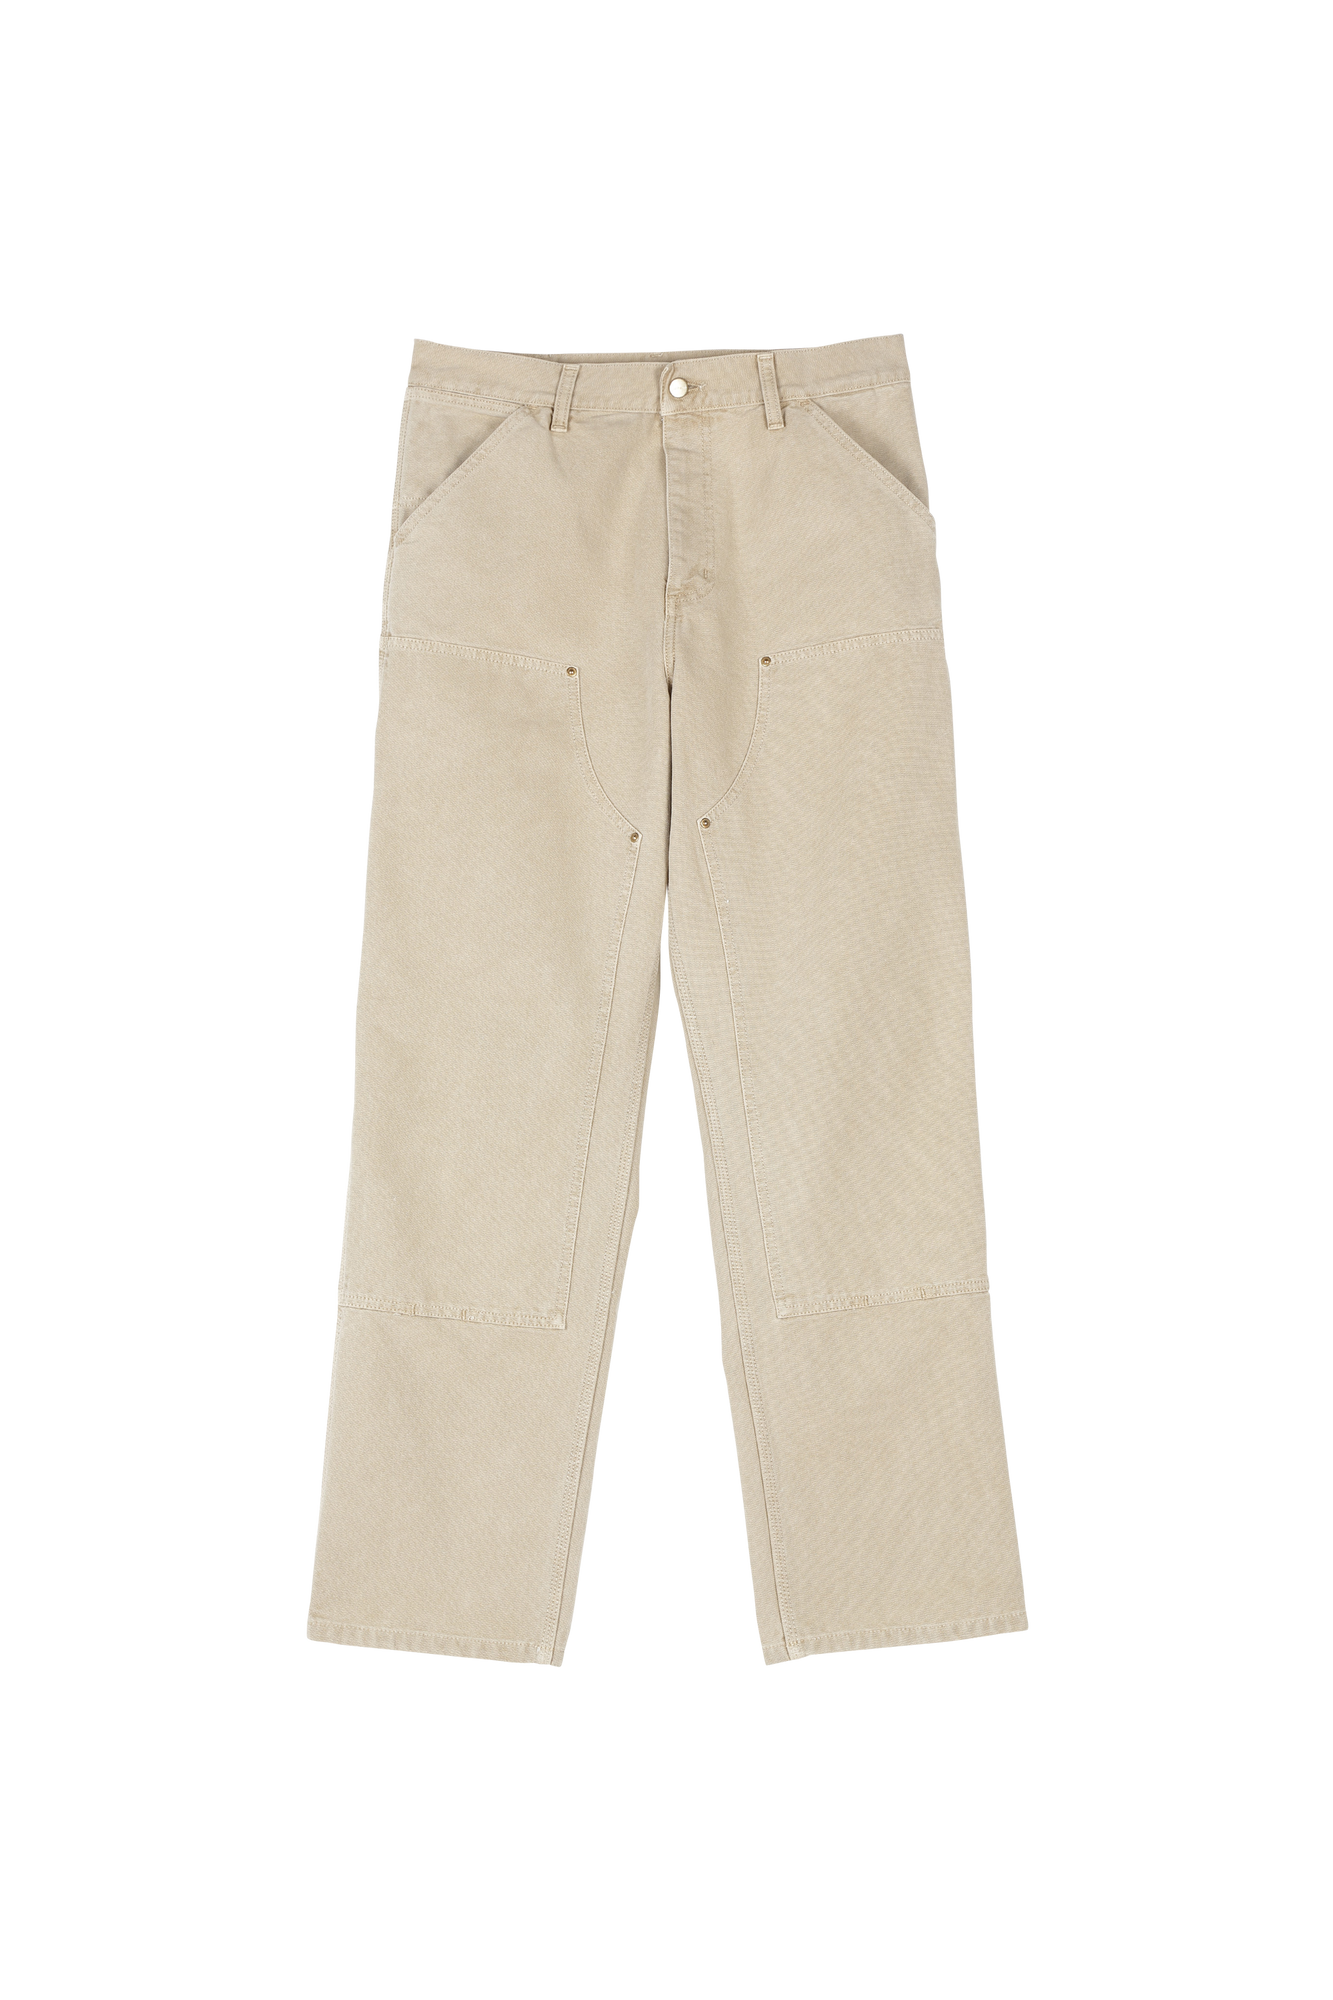 Carhartt Wip - Pantalon droit en coton bio